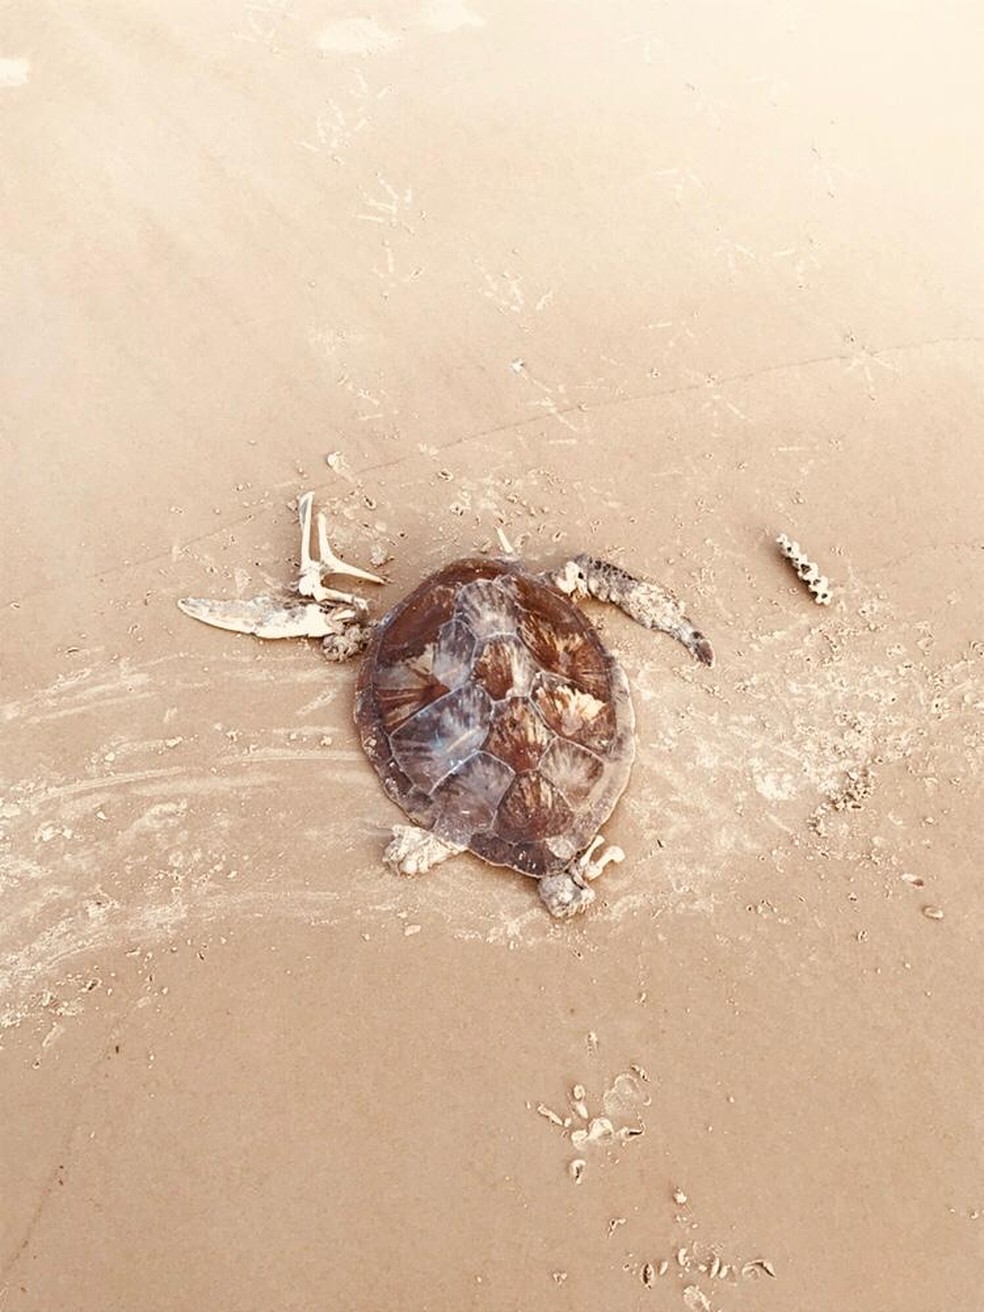 Tartaruga achada morta em praia de Ilhéus — Foto: Jose Adolfo/A-mar